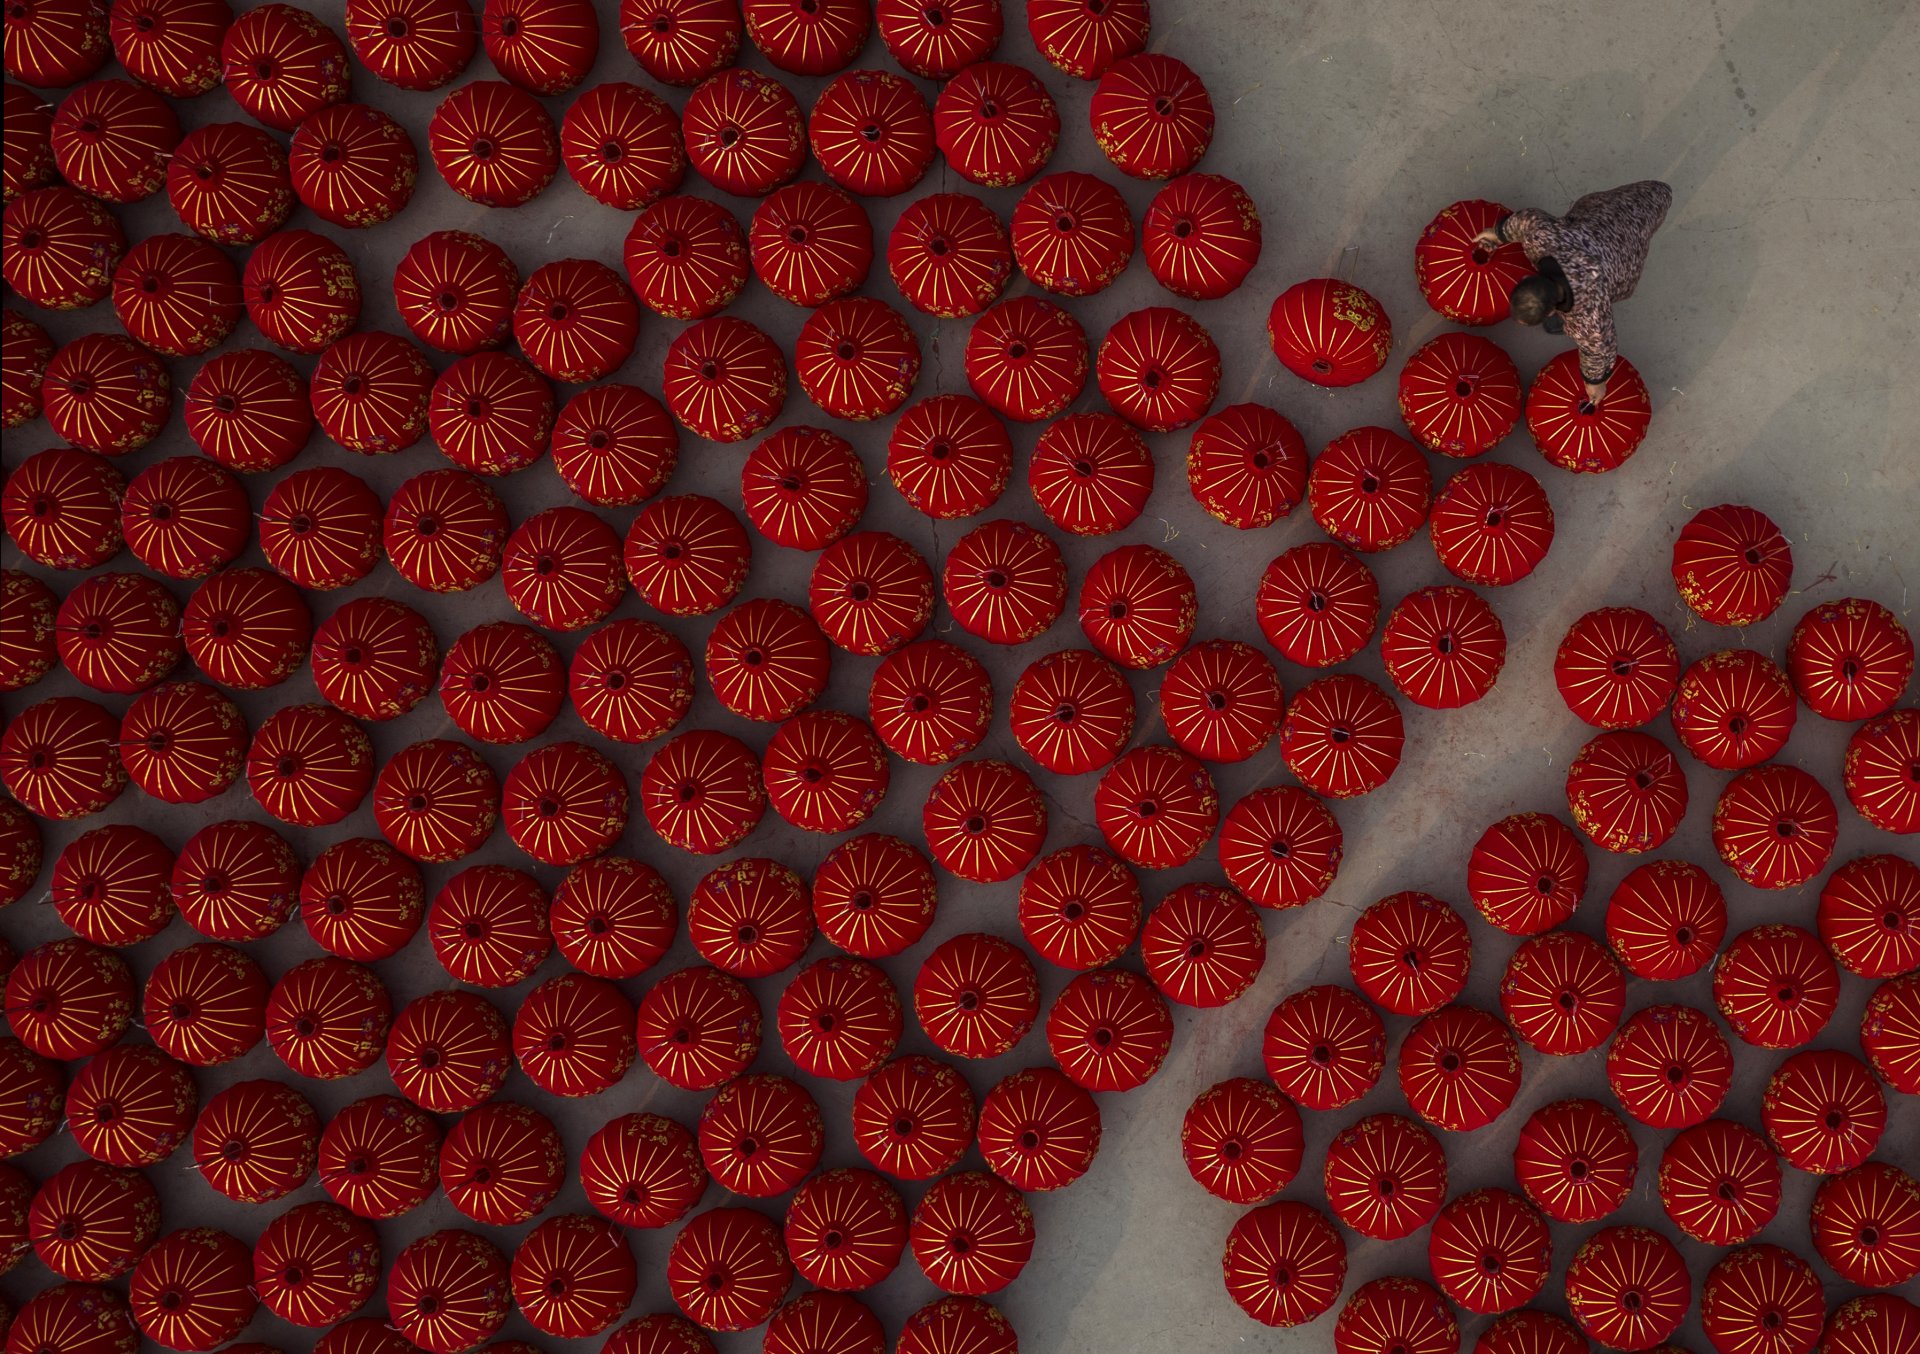 Село Тунтоу е столицата на фенерите на Китай. То увеличи производството си през изминалата година,  след като страната забави производството на символичните червени декорации, свързани с най-големия празник в страната през годината заради пандемията.